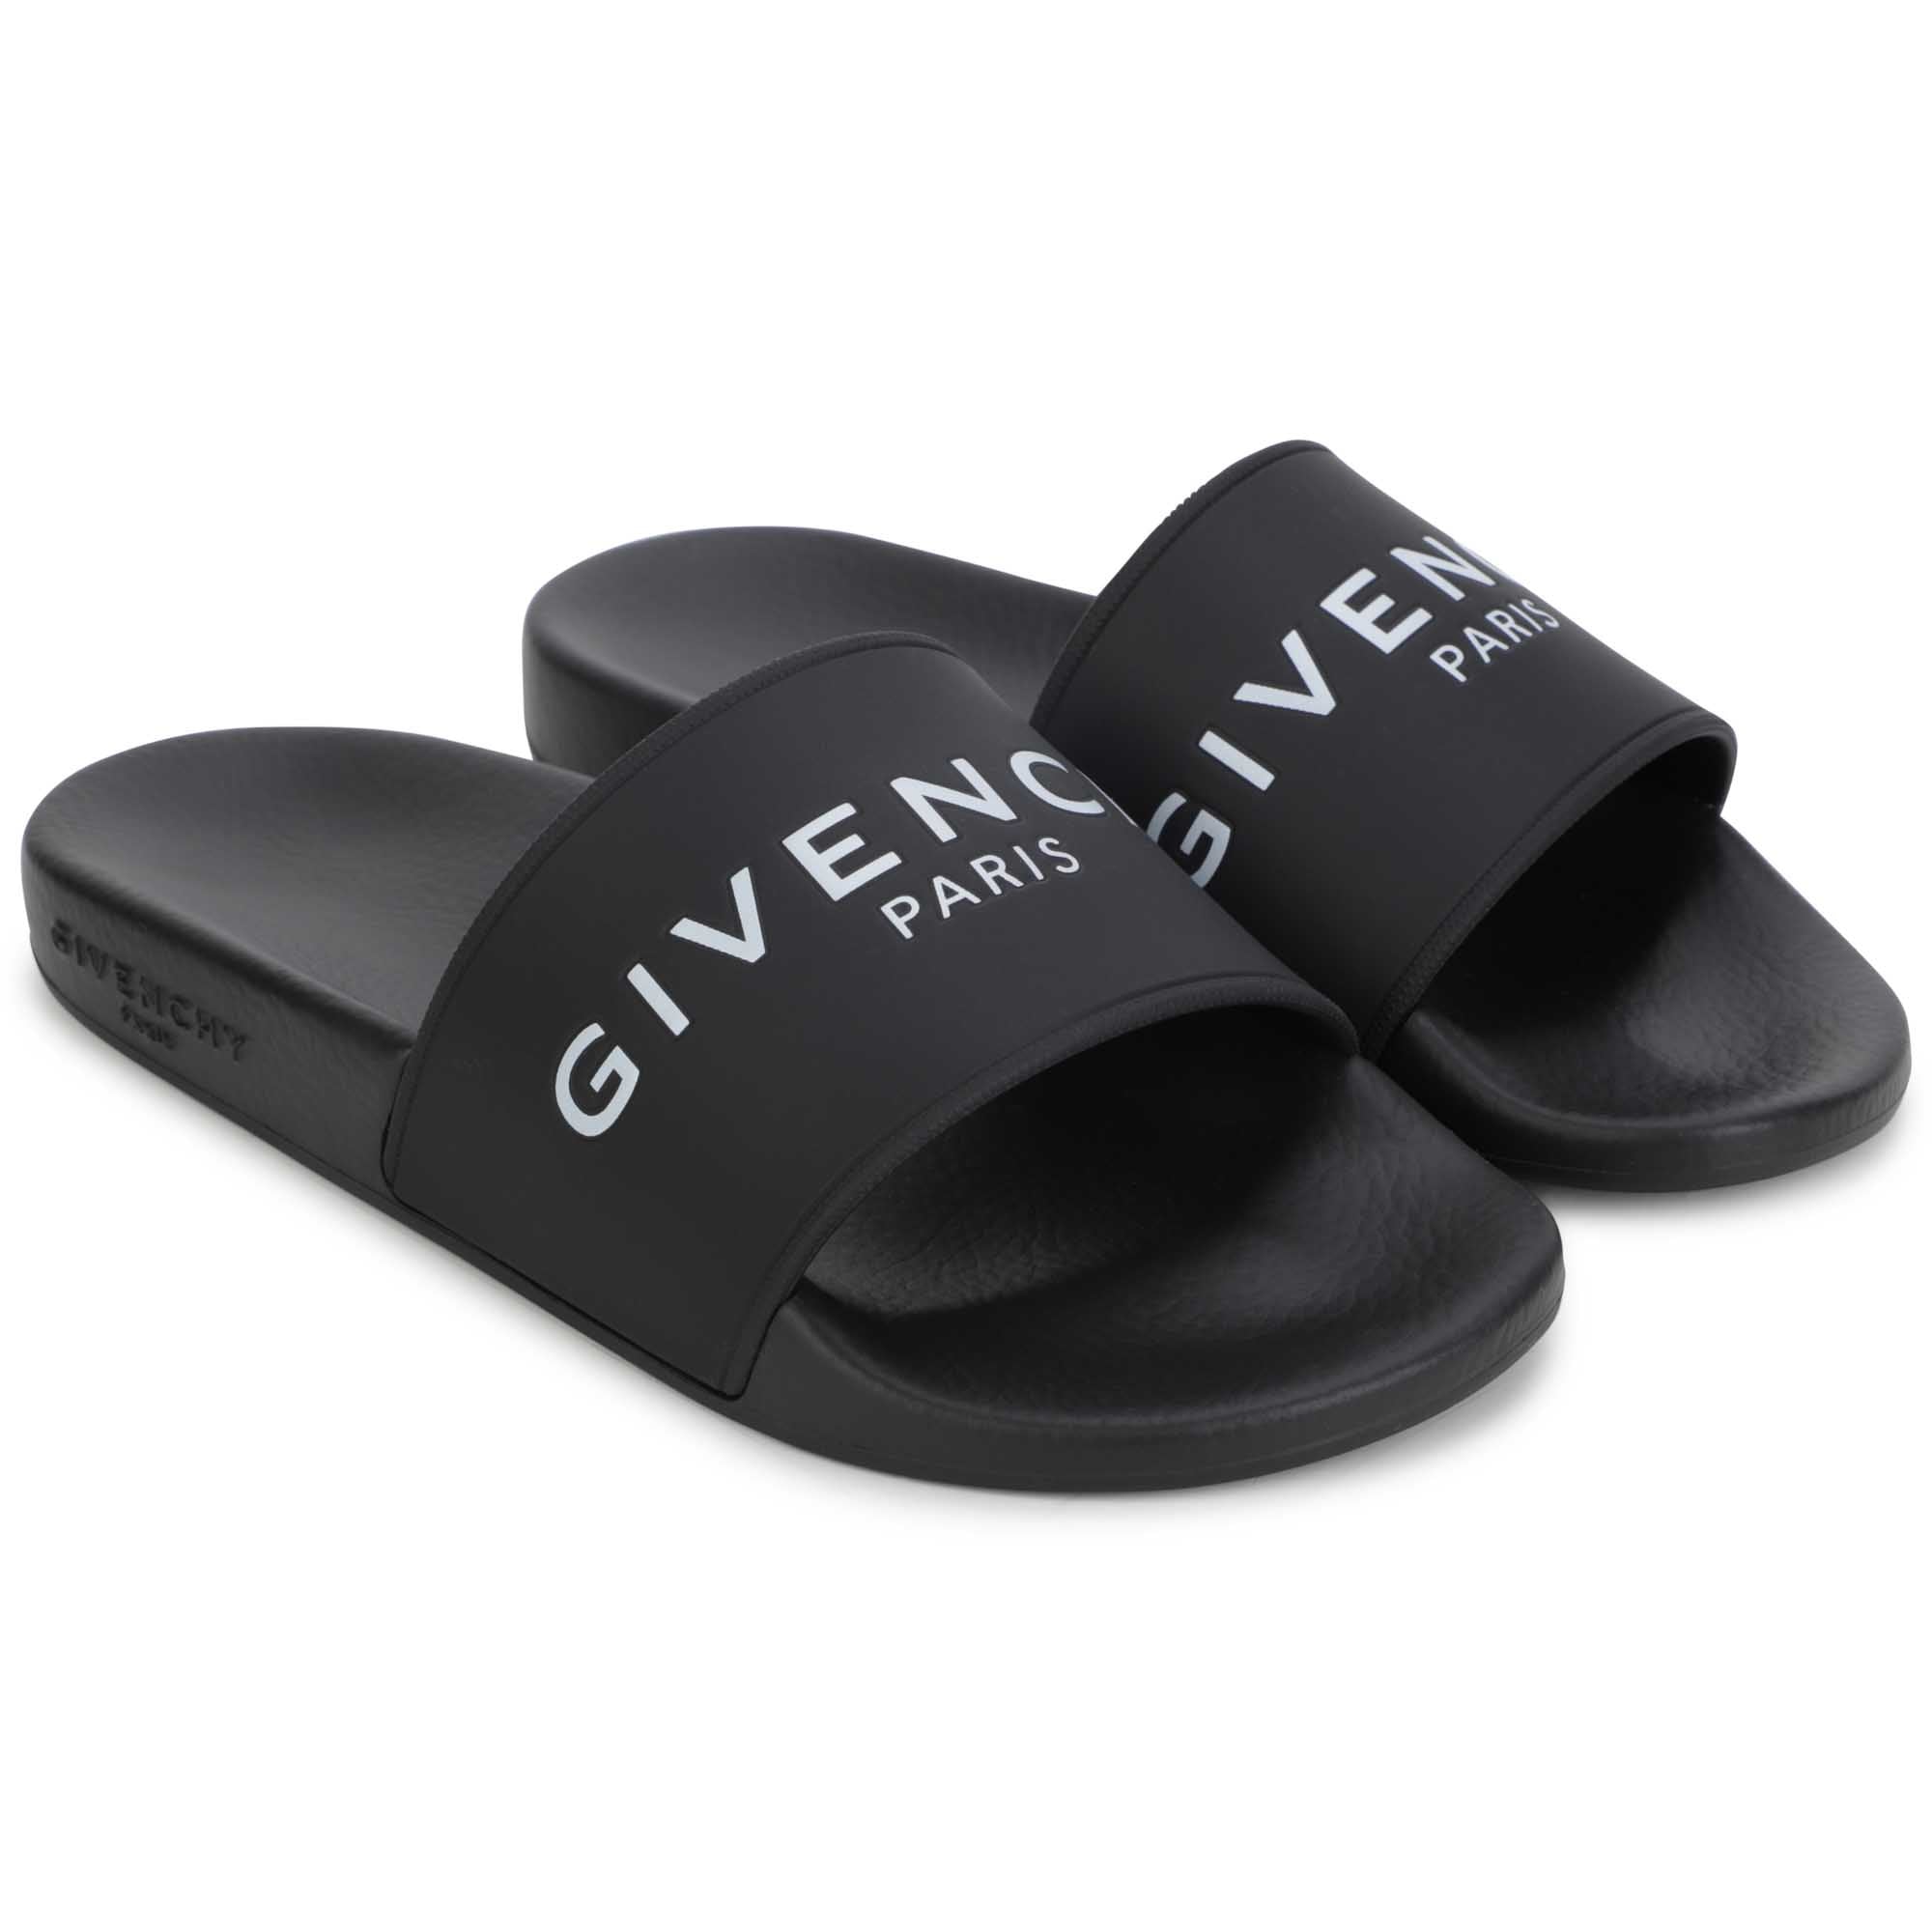 Givenchy Black Slides